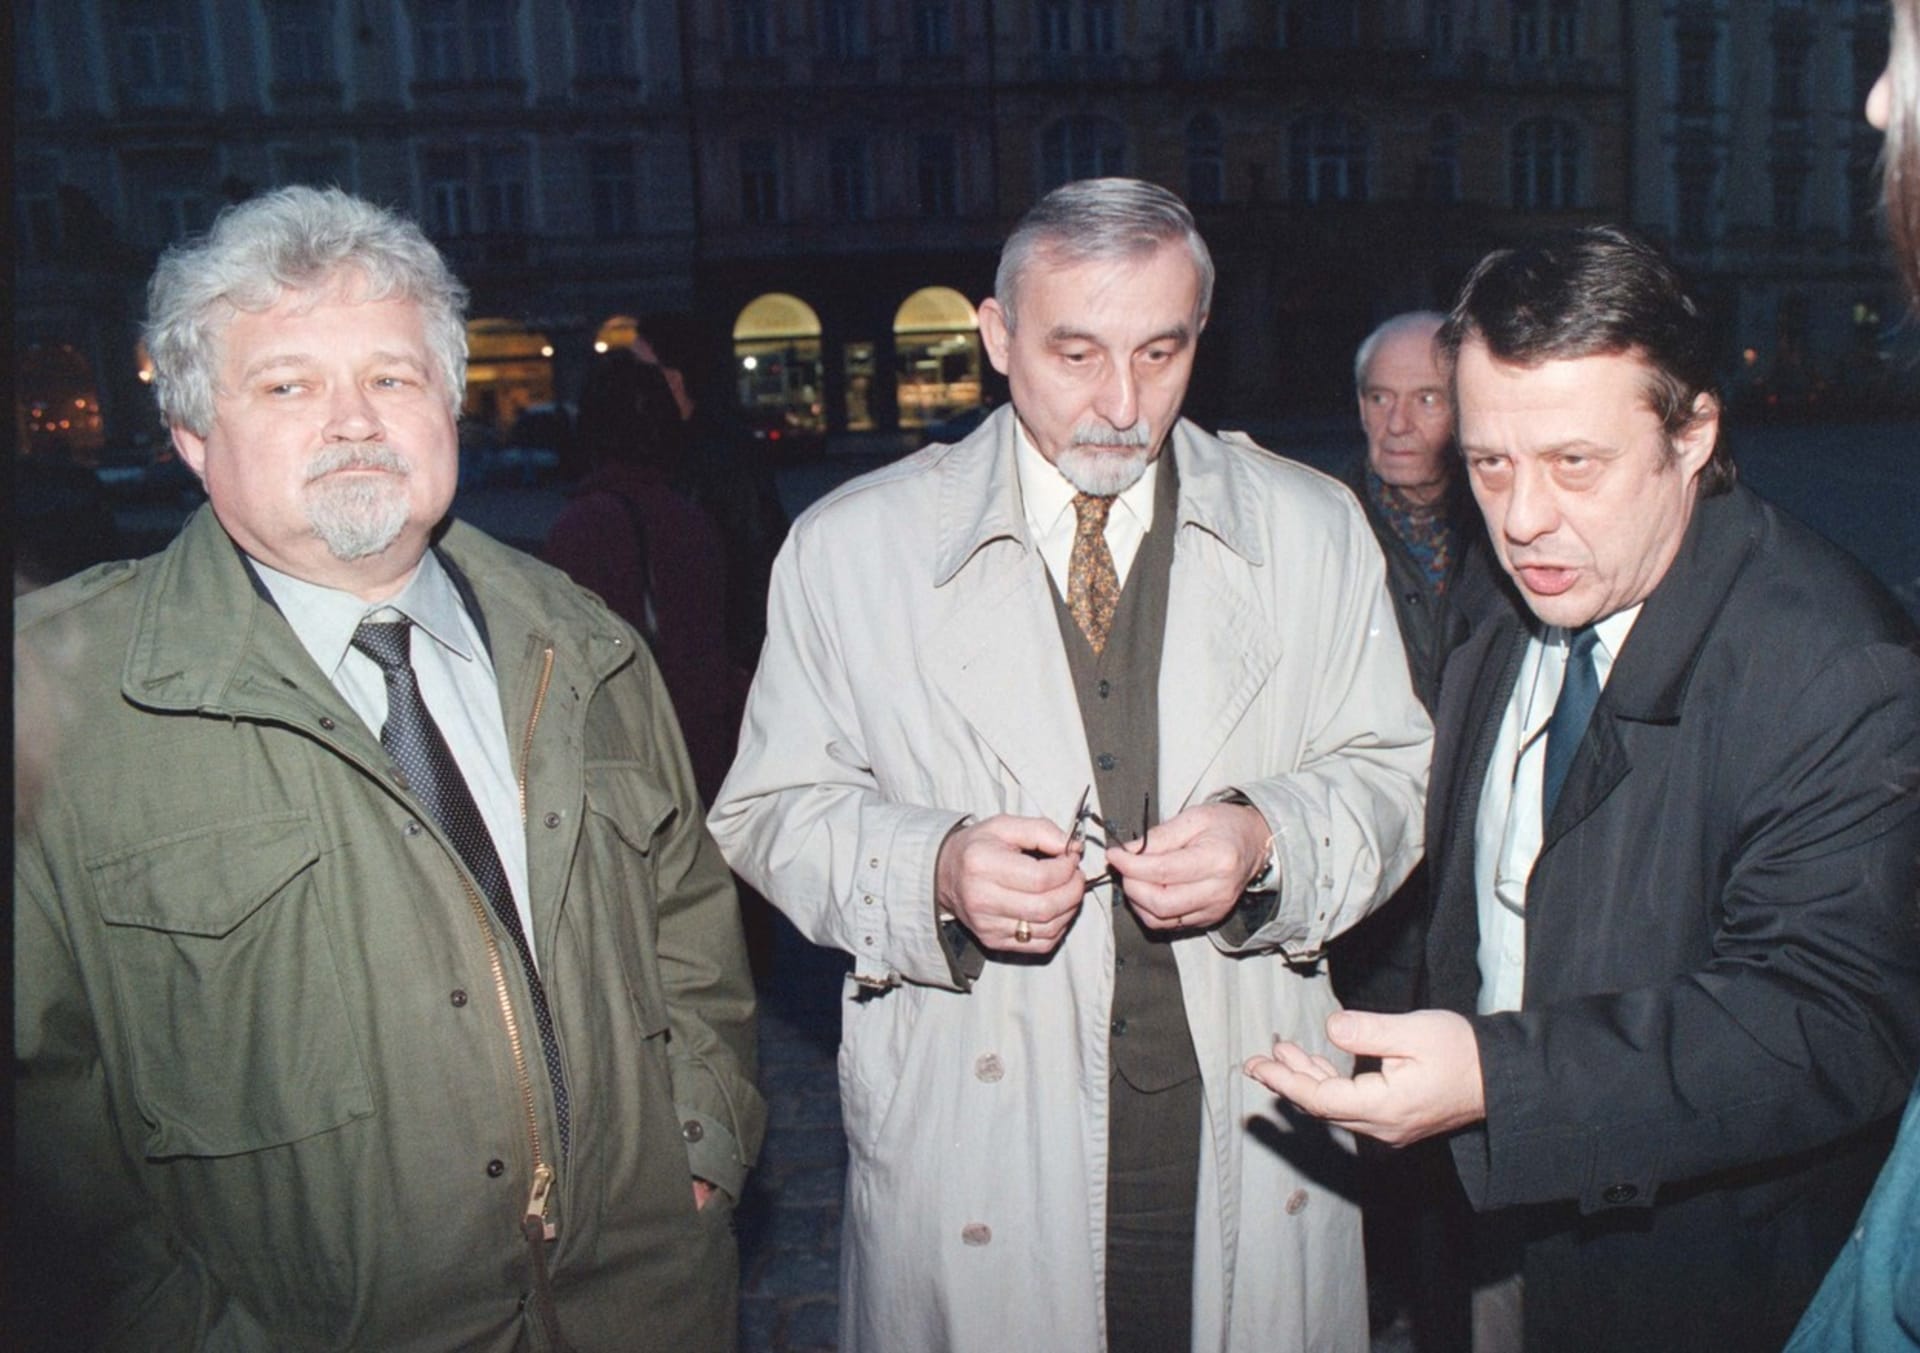 Ivan Havlíček (uprostřed) spolu s Petrem Pithartem a Petrem Uhlem v roce 1998 na demonstraci proti rasismu v Praze, kde uctili památku šestadvacetileté Heleny Bihariové, která zemřela po útoku skinheadů.